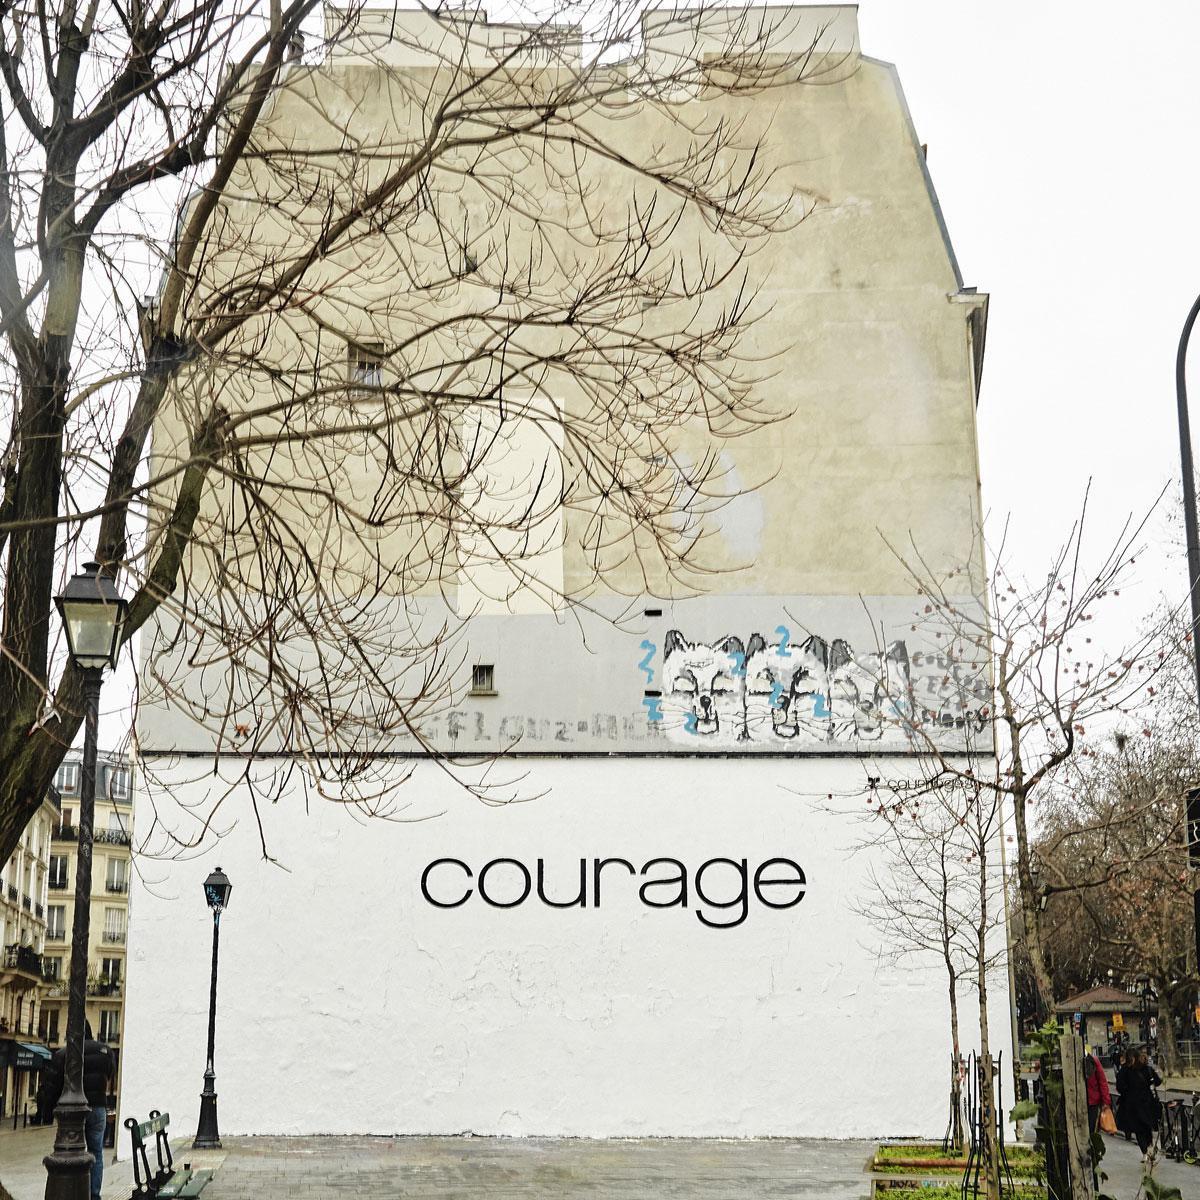 'Courage' of moed, geschilderd op een witte muur, begin januari 2021. 'Een boodschap van hoop en dromen', in een typografie gevonden in de archieven, op een bobslee uit 1973.